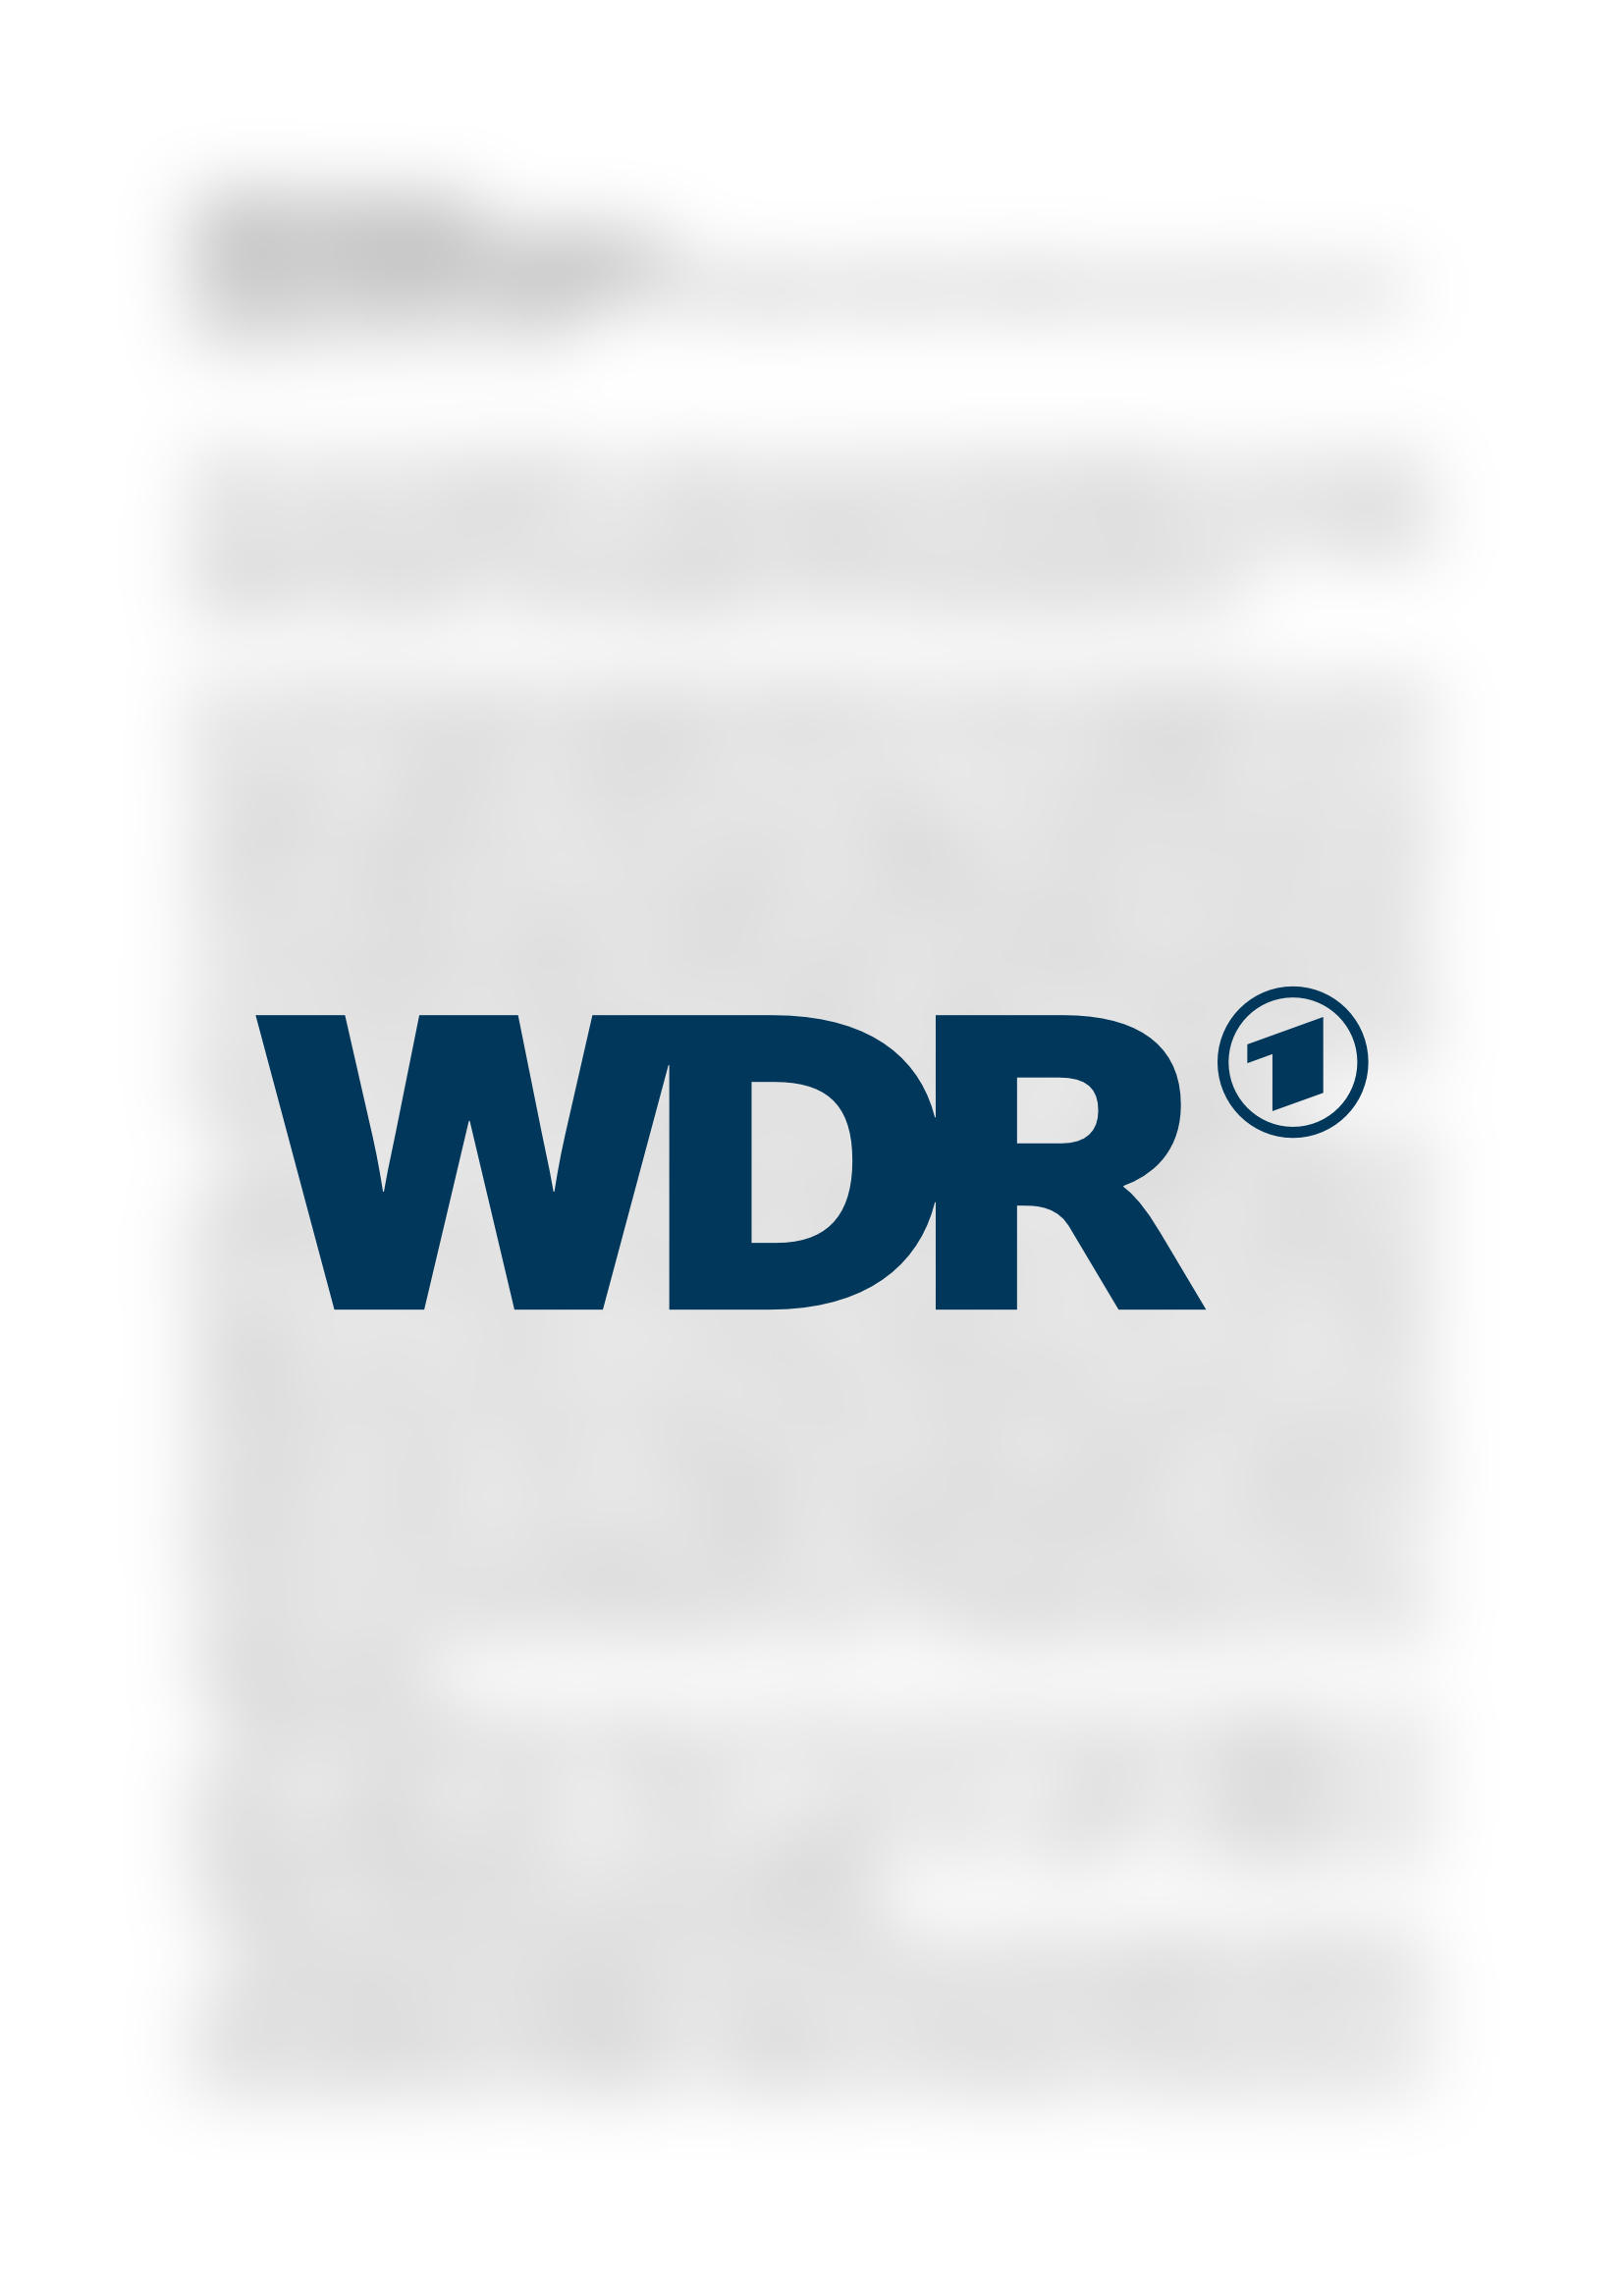 Vorschau - WDR